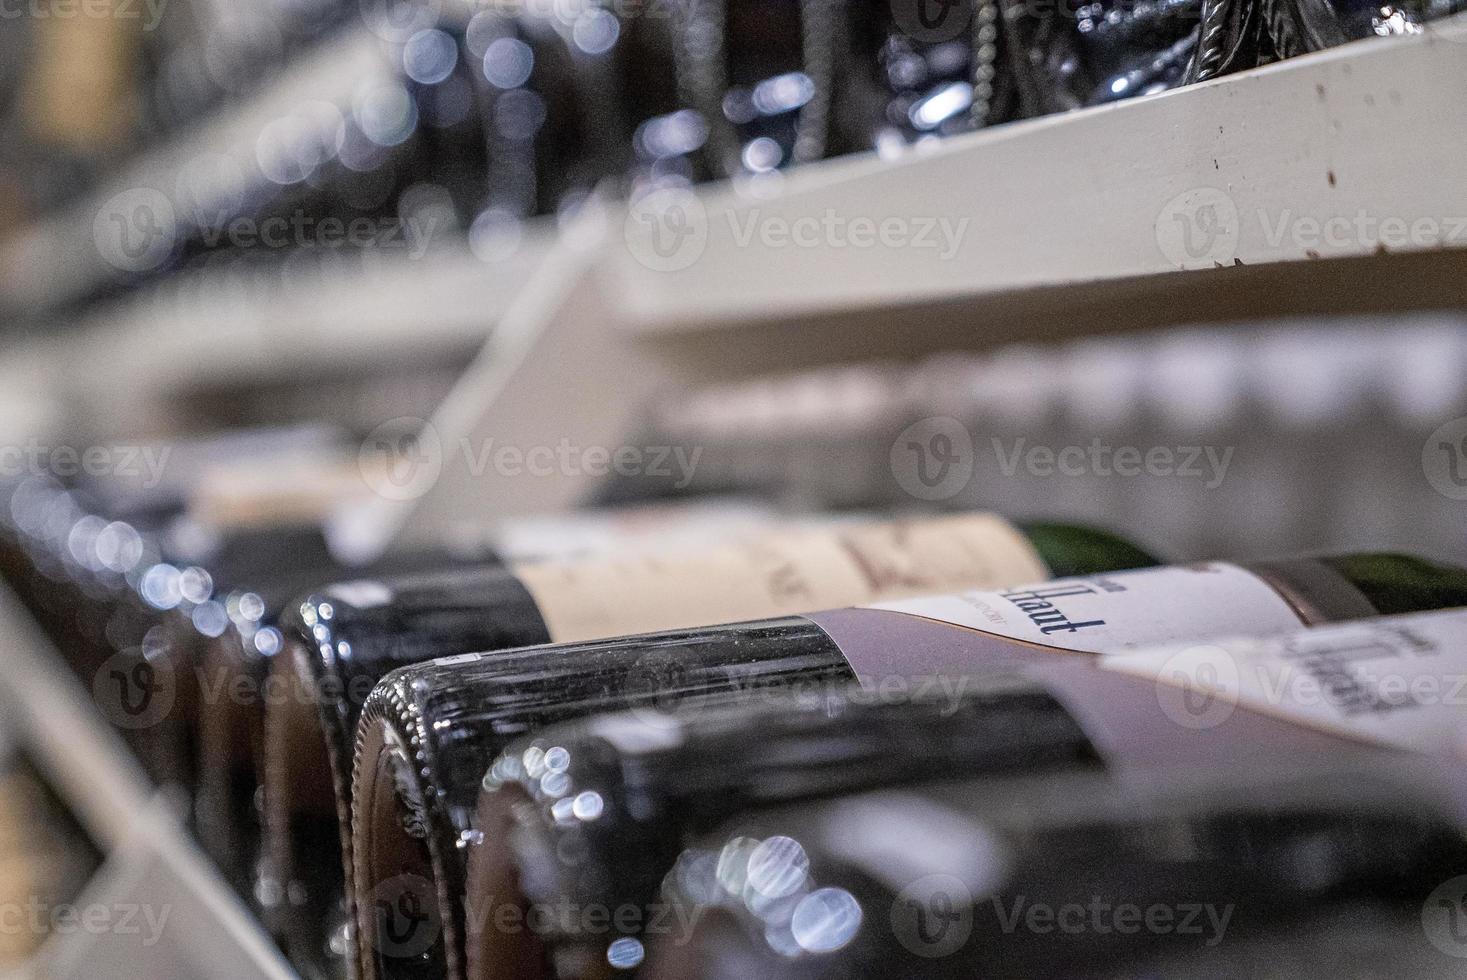 verscheidenheid aan wijn in glazen flessen op rekken in moderne supermarkt foto